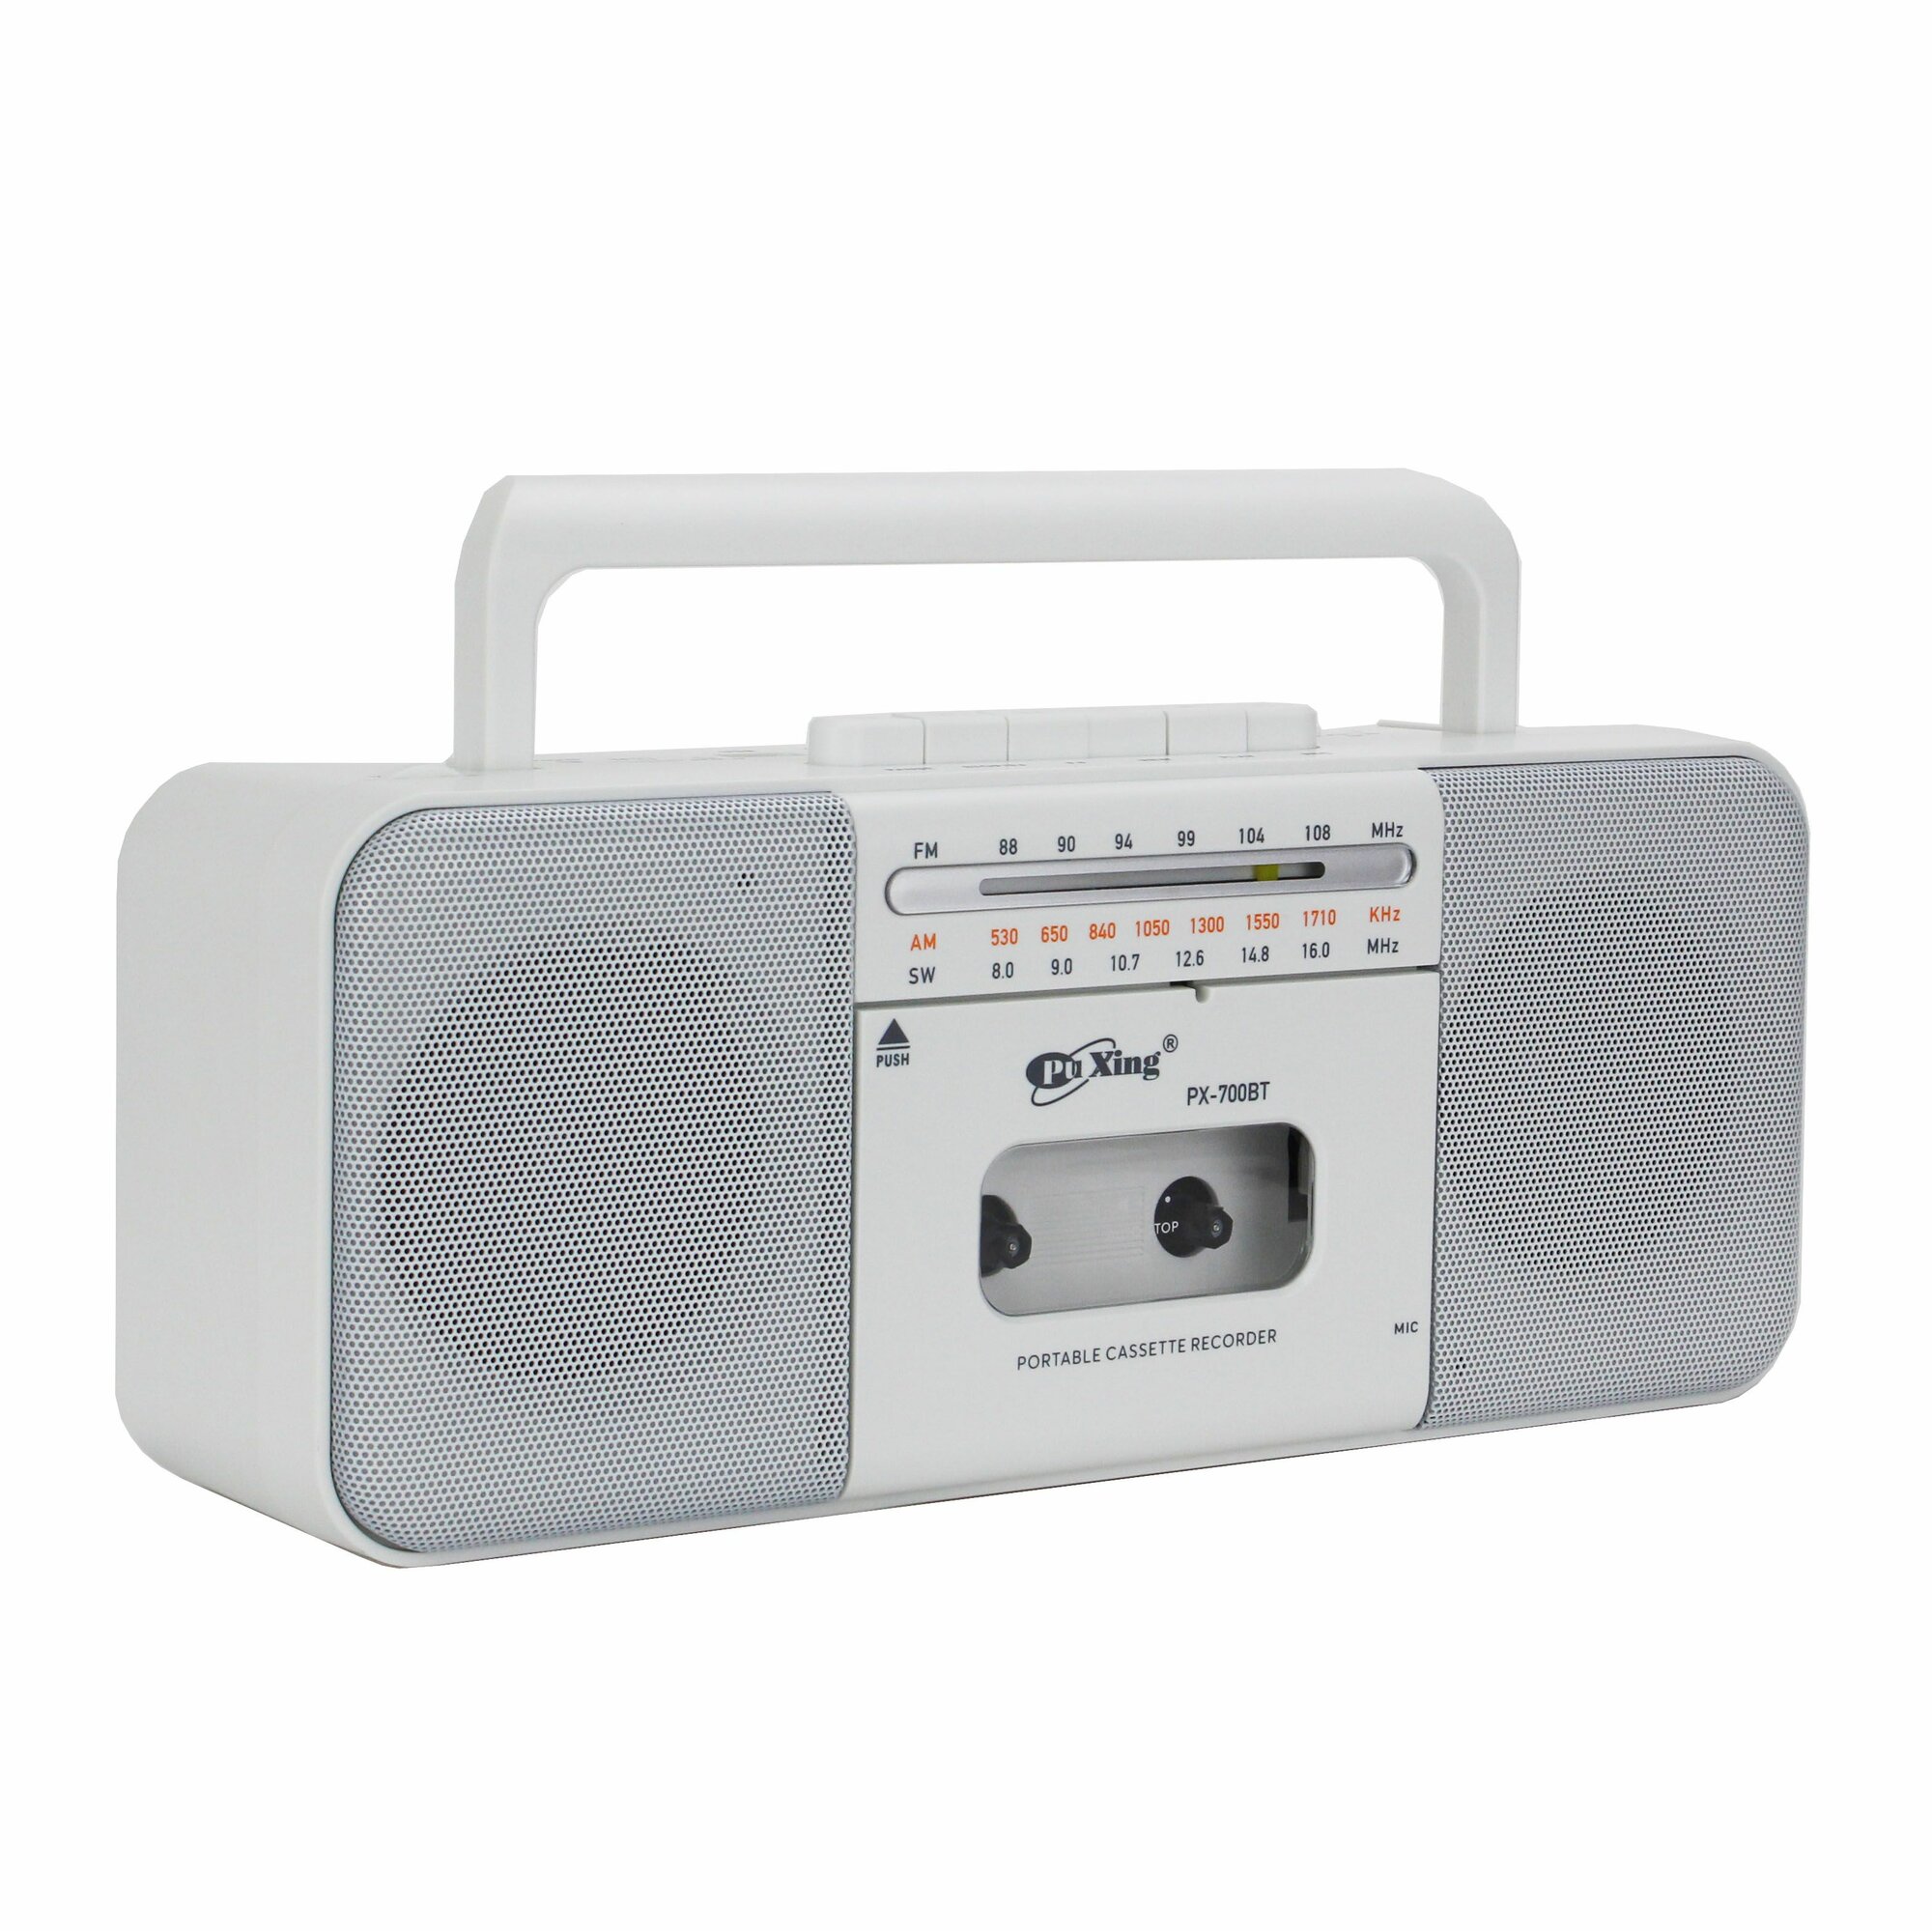 Переносная кассетная стереофоническая магнитола с Bluetooth, USB и microSD PuXing PX-700BT